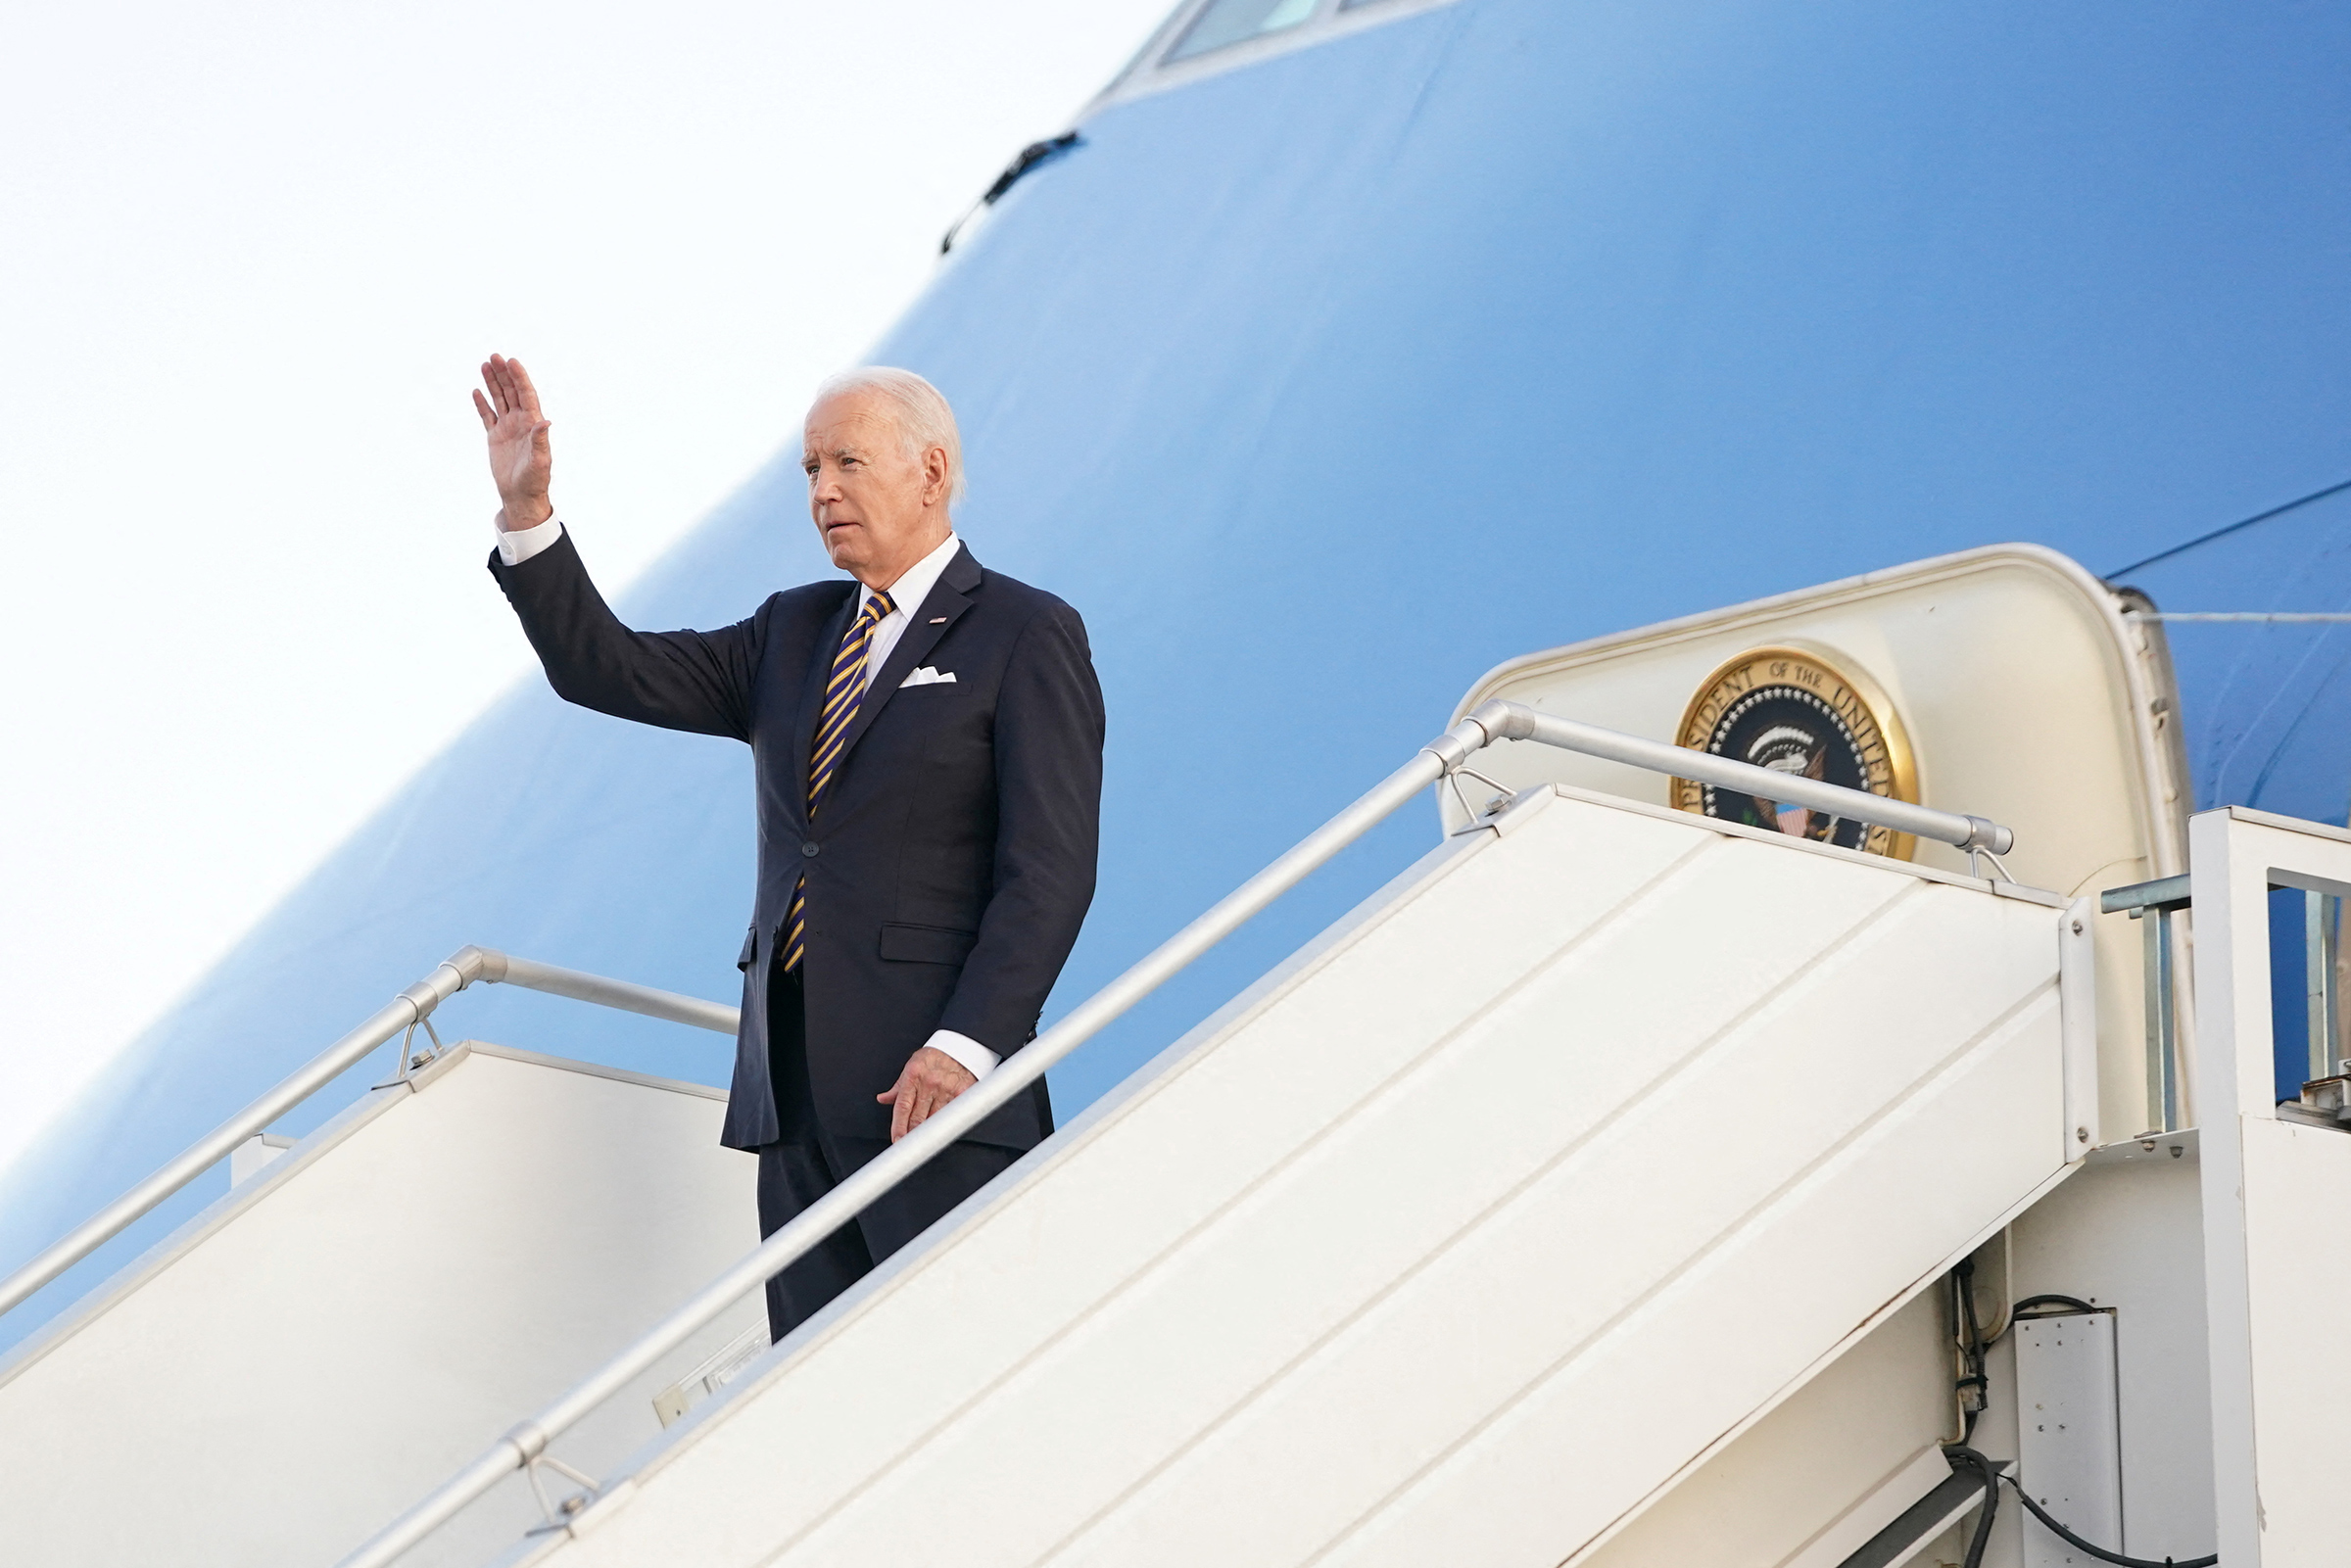 U.S. President Joe Biden waves upon arrival in Helsinki, Finland, on July 12. (Kevin Lamarque—Reuters)